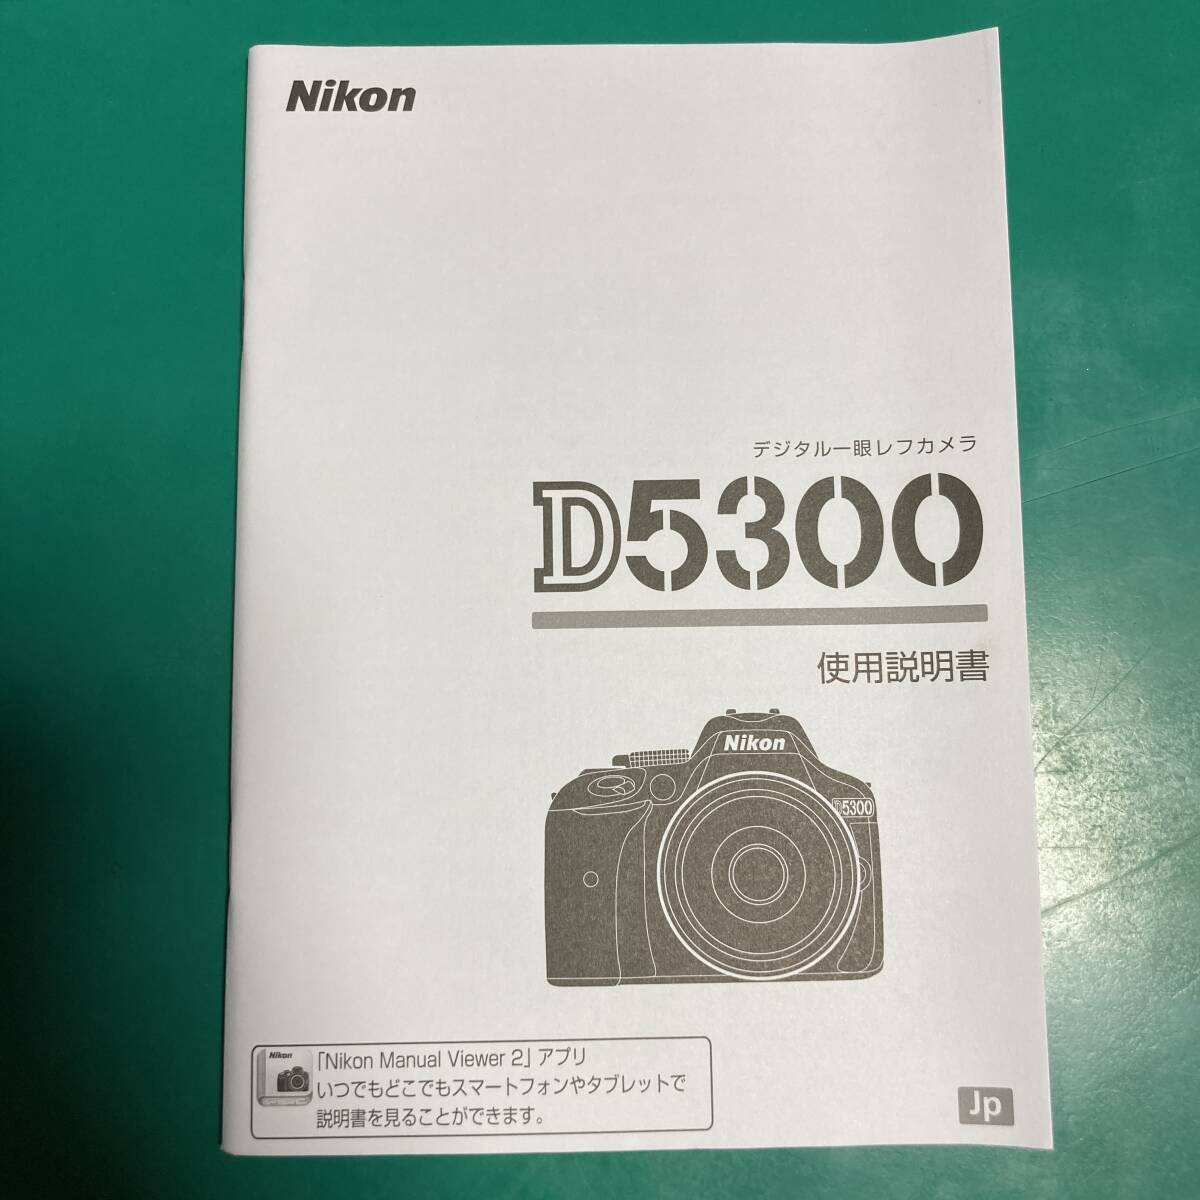 Nikon D5300 использование инструкция б/у товар R01963